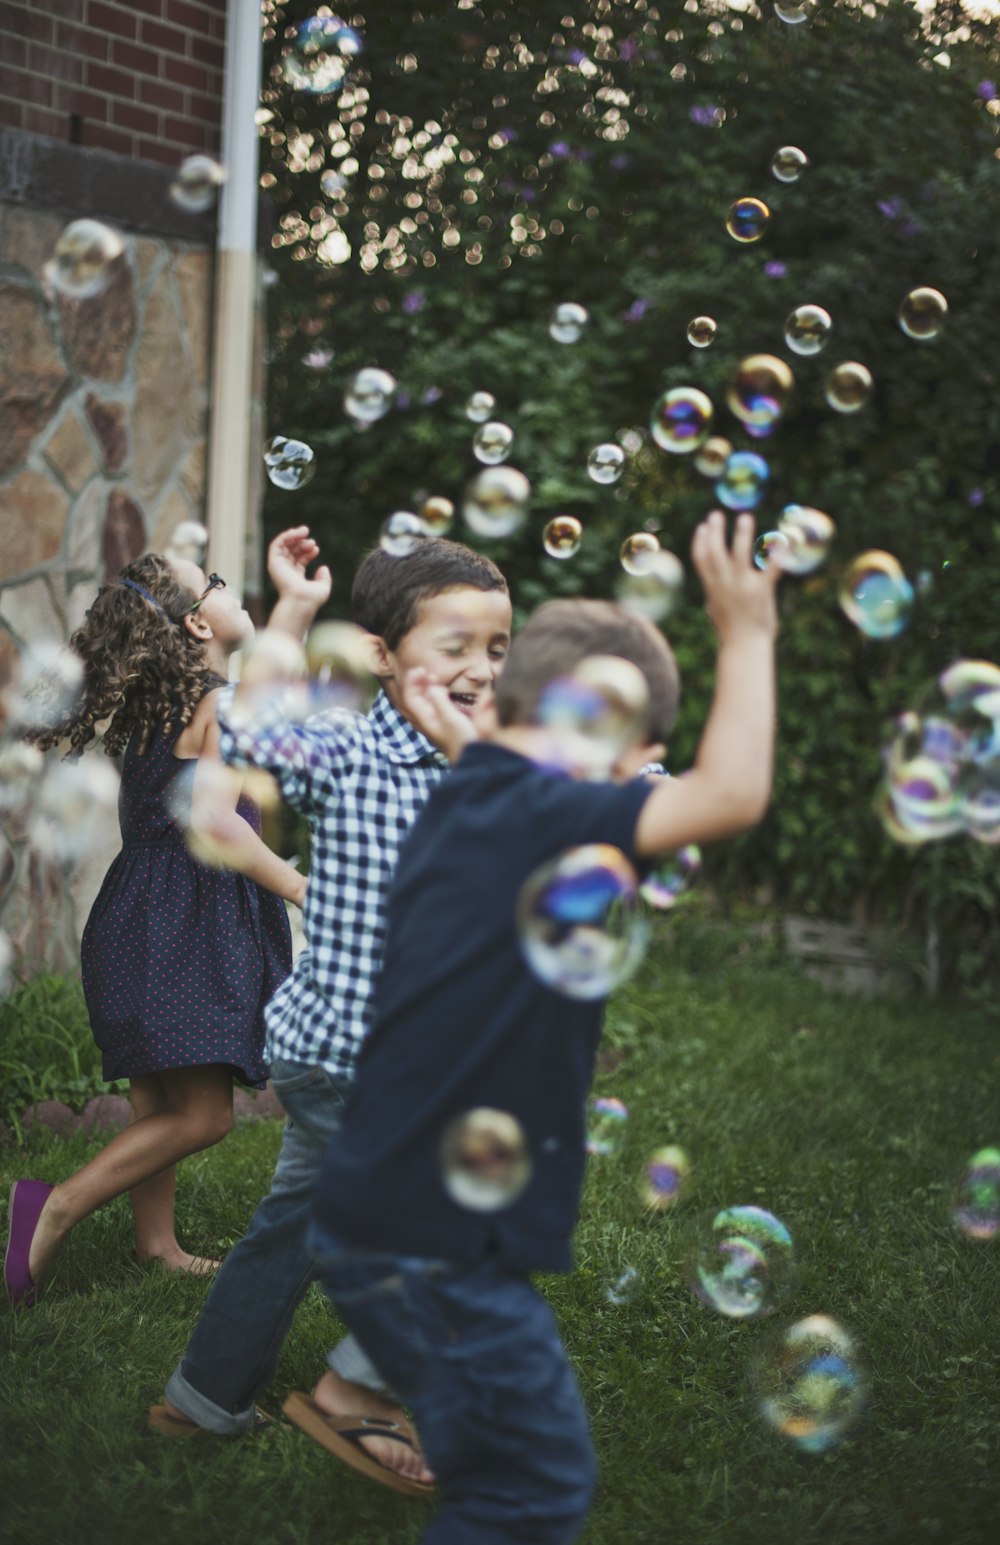 garçon en chemise à pois bleu et blanc jouant des bulles